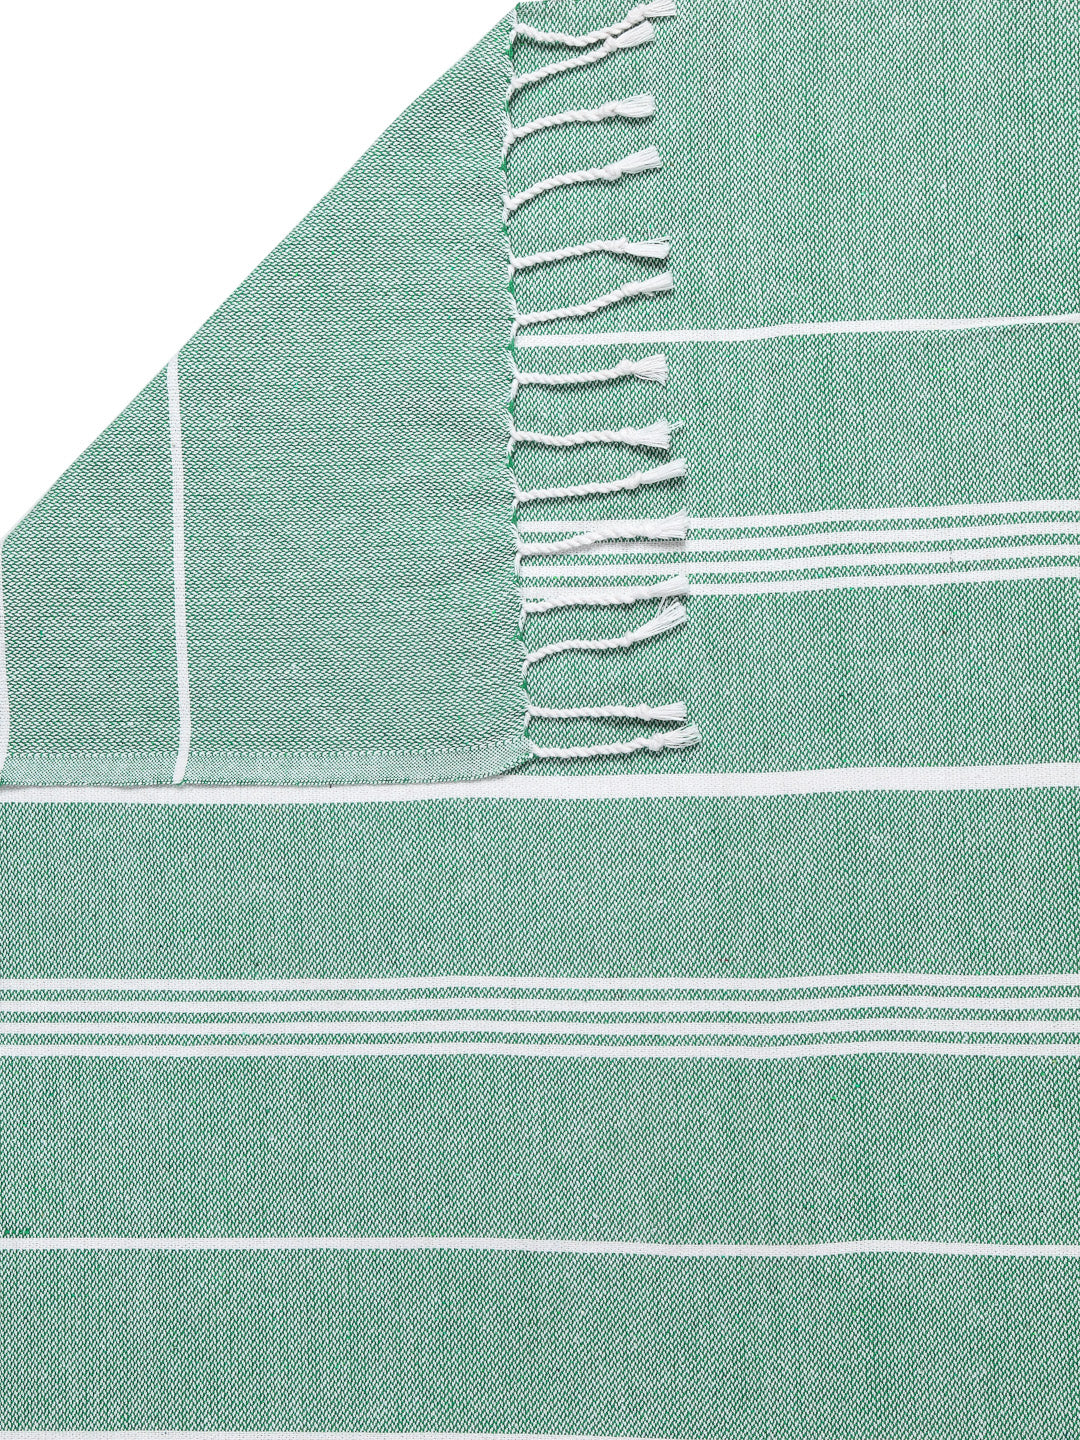 KLOTTHE Set of 4 Multi Cotton Striped Bath Towels (150X75 cm)